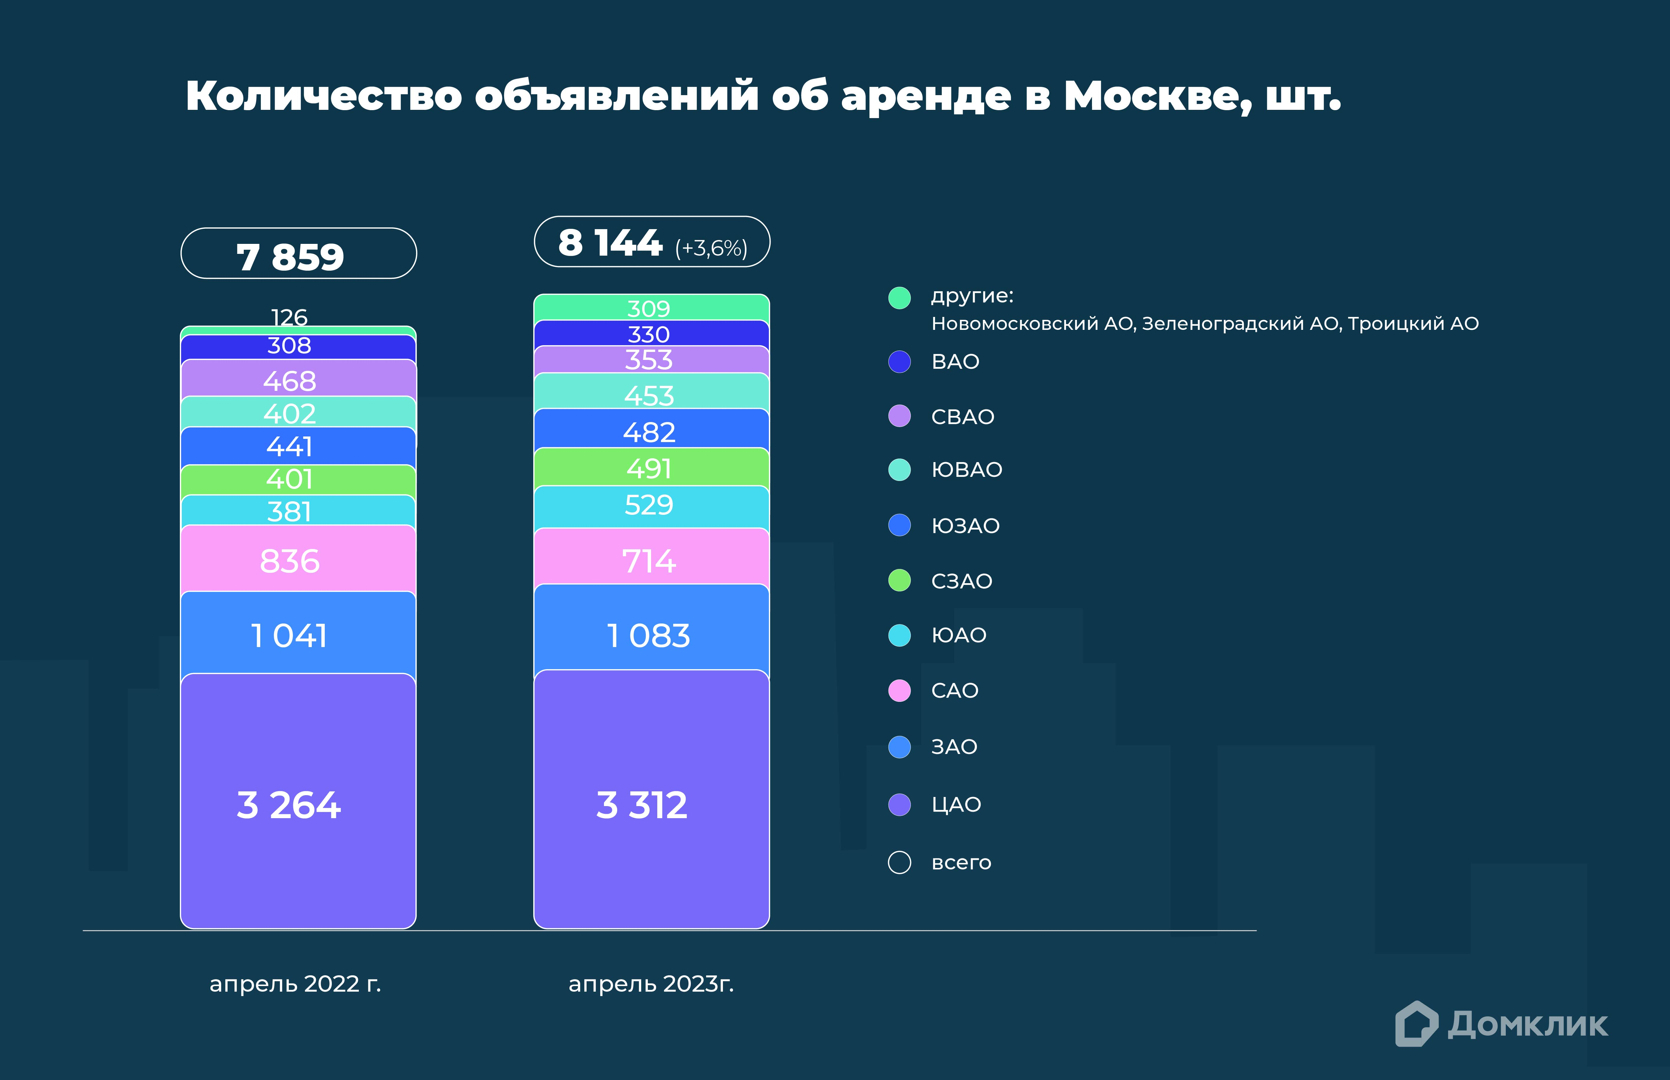 График показывает количество объявлений об аренде недвижимости в округах Москвы в апреле 2022 года и апреле 2023 года (в шт.). В скобках указано отношение данных апреля 2023 года к данным апреля 2022 года (в процентах). Дополнительно приведены данные по всей Москве.